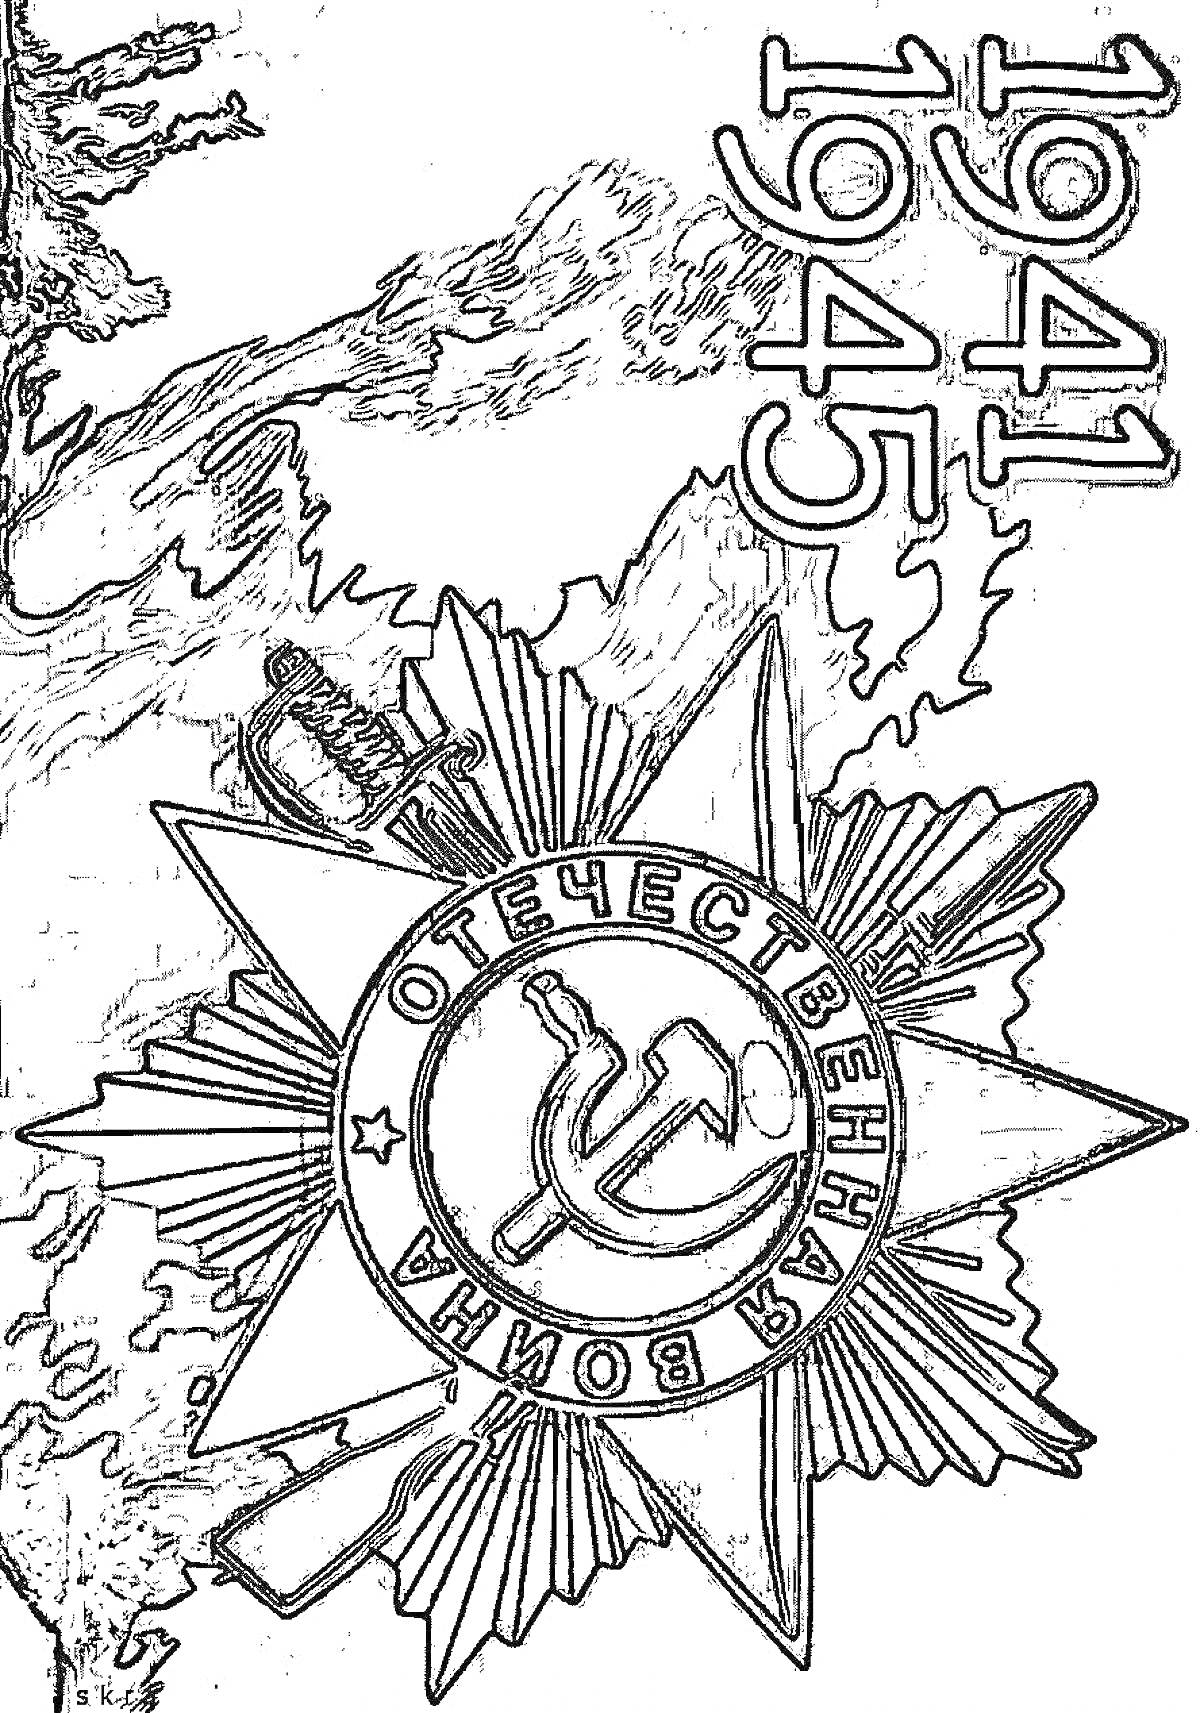 Орден Отечественной войны на фоне пейзажа и дат 1941-1945